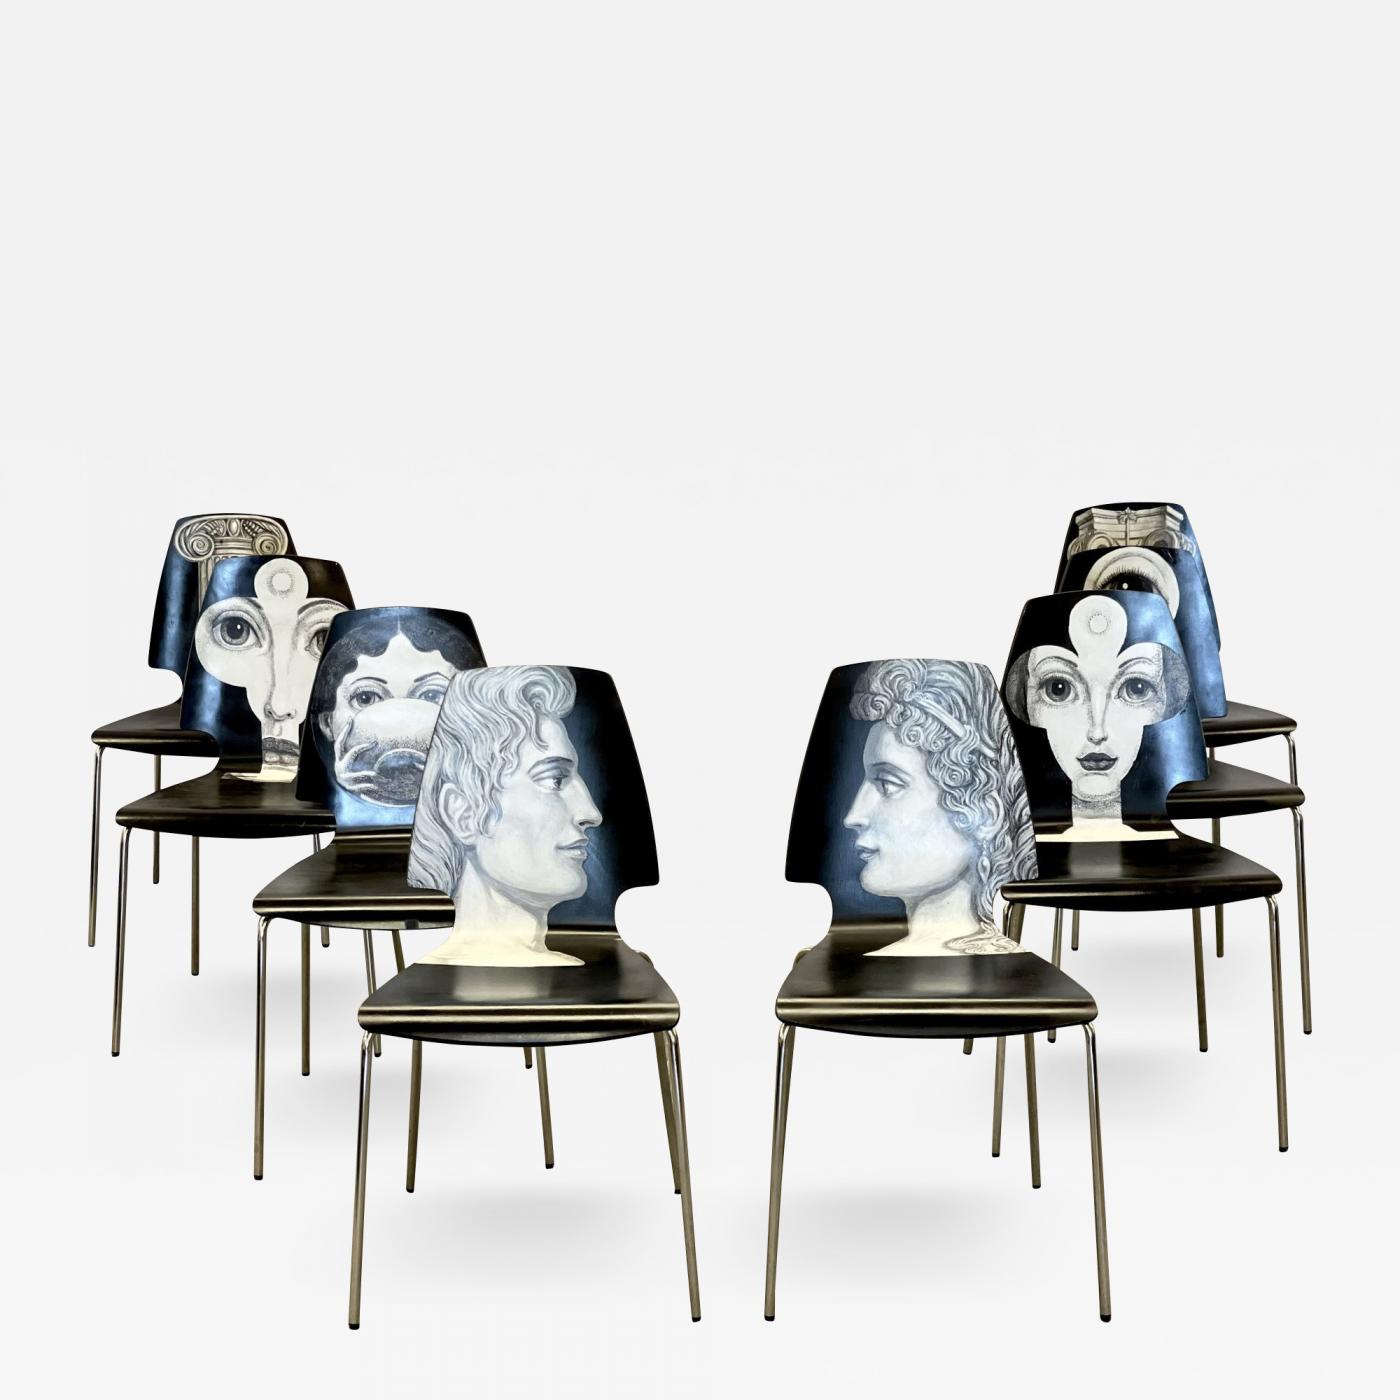 Piero Fornasetti - Eight Mid-Century Modern Piero Fornasetti Style Dining /  Side Chairs, Italy